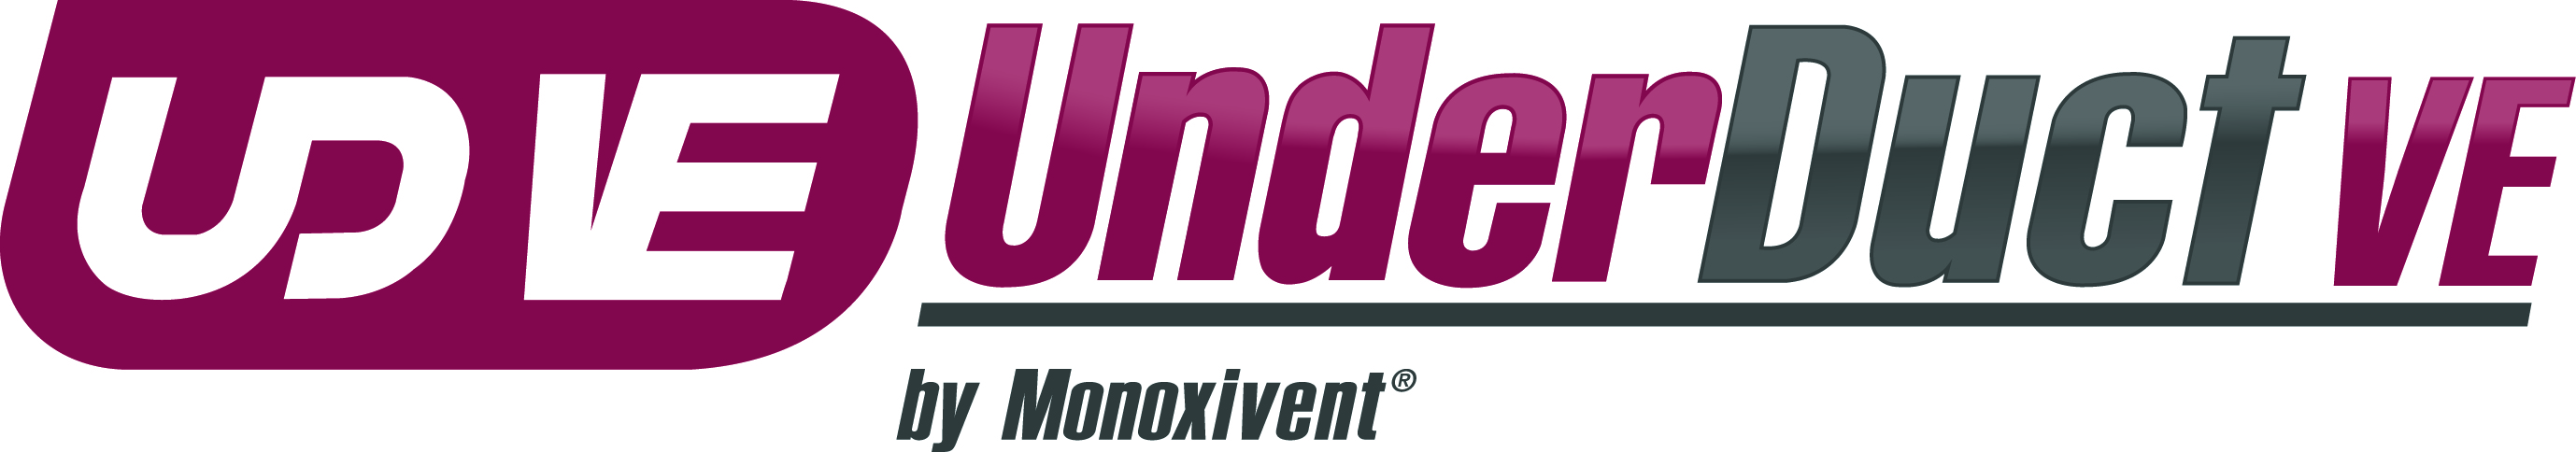 Underductve logo gradient cmyk